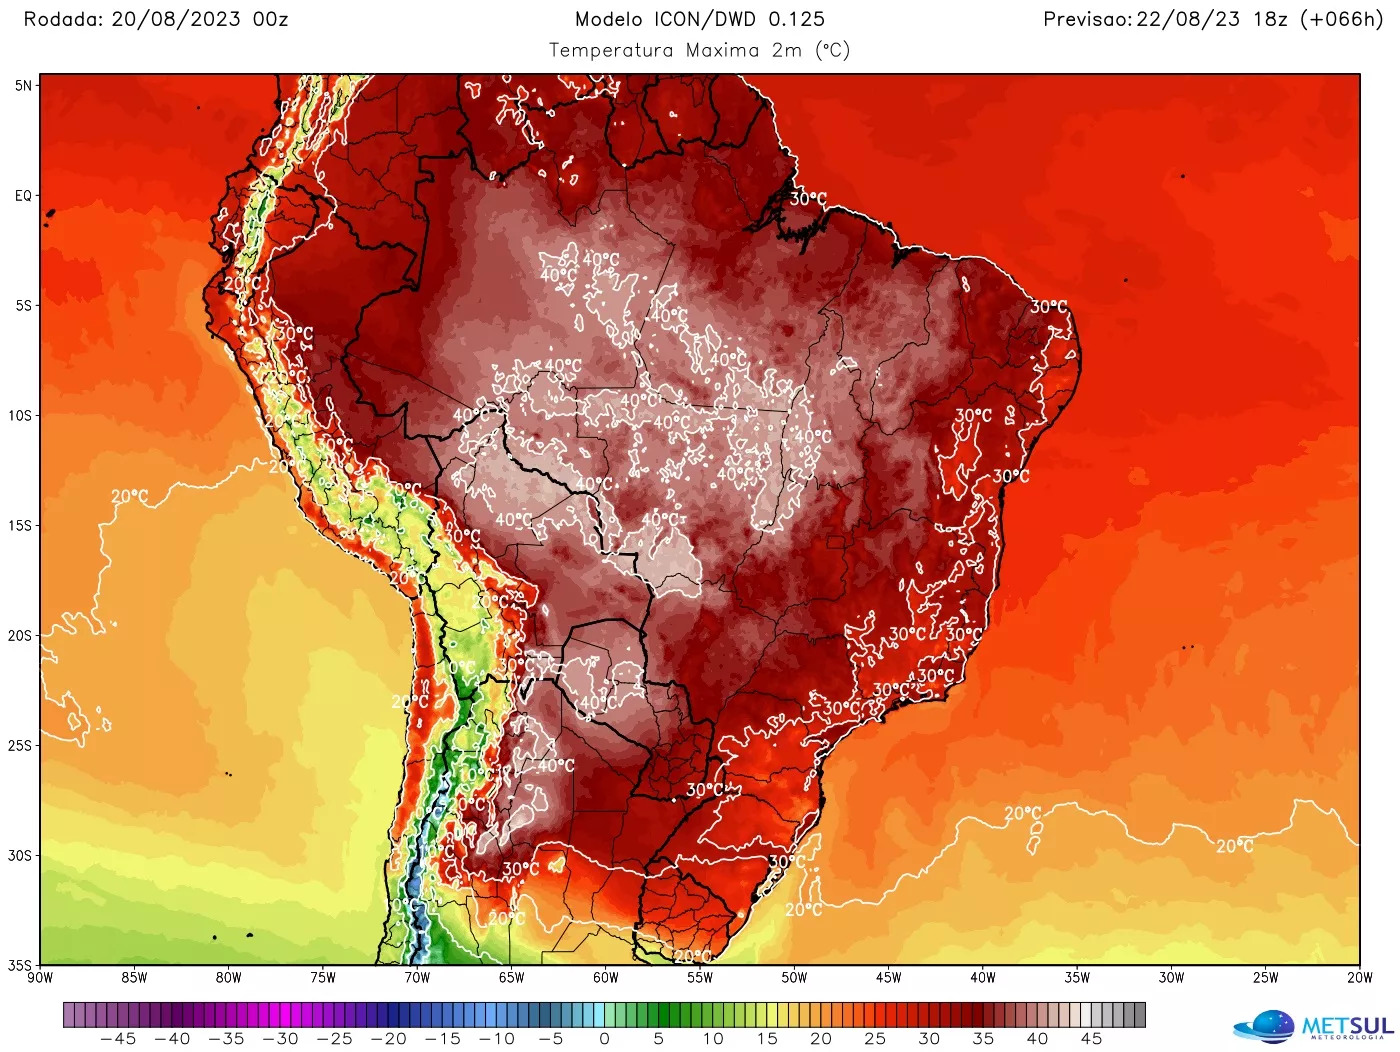 Modelo ICON/DWD indica forte calor no Brasil a partir desta terça-feira.